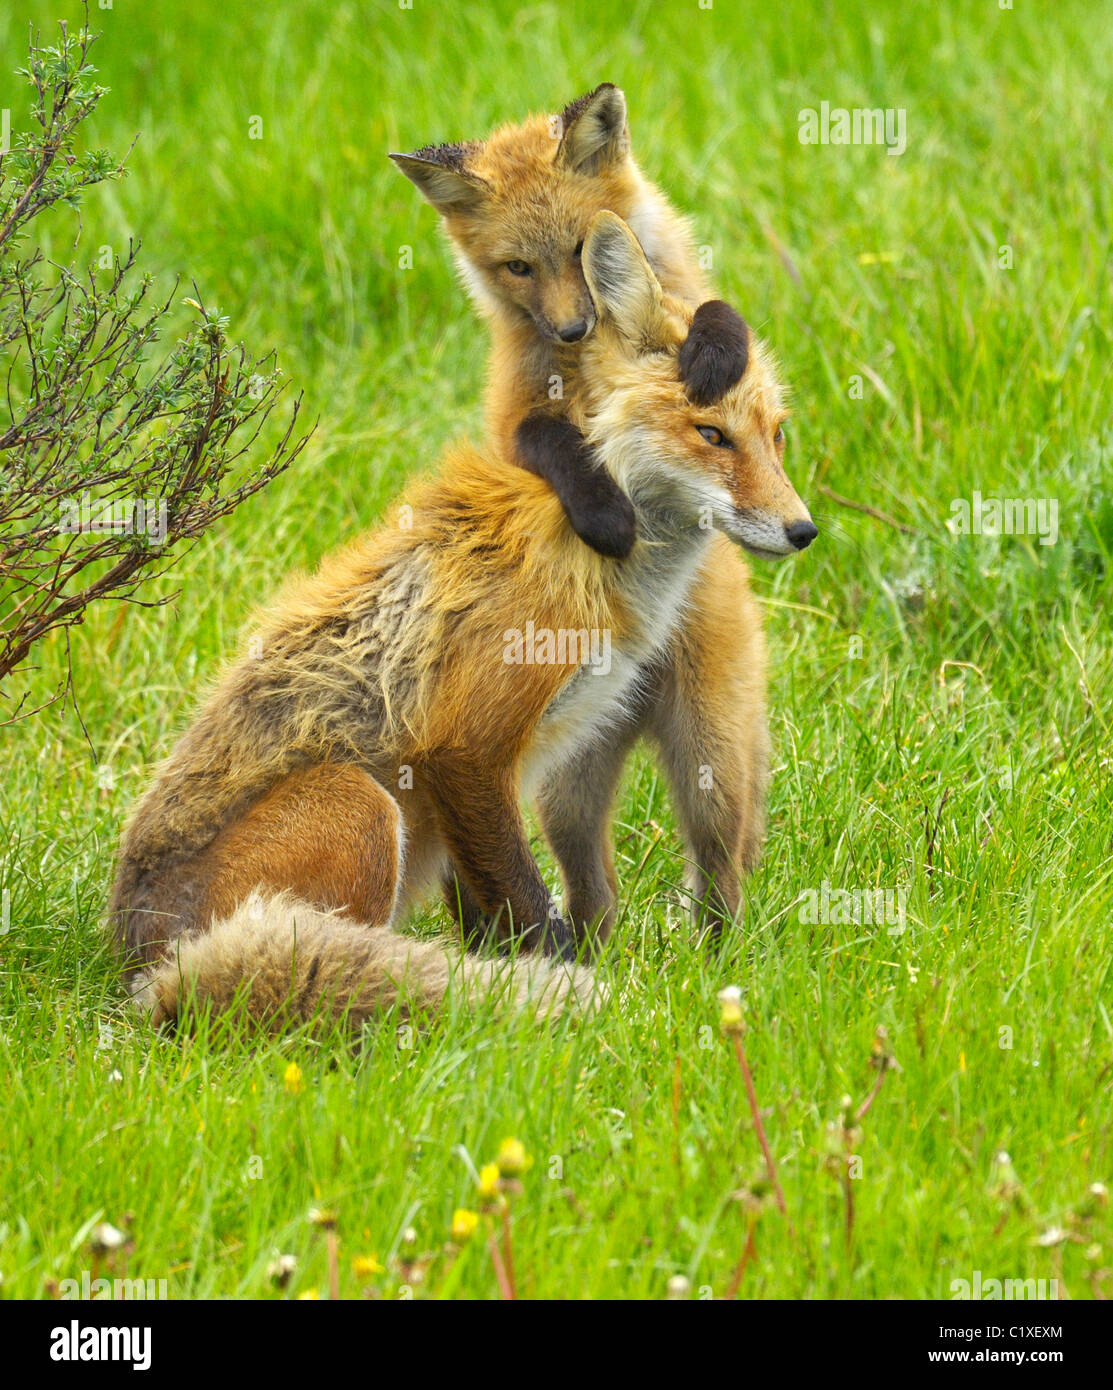 Un bébé renard saute sur sa mère et mord l'oreille. Banque D'Images